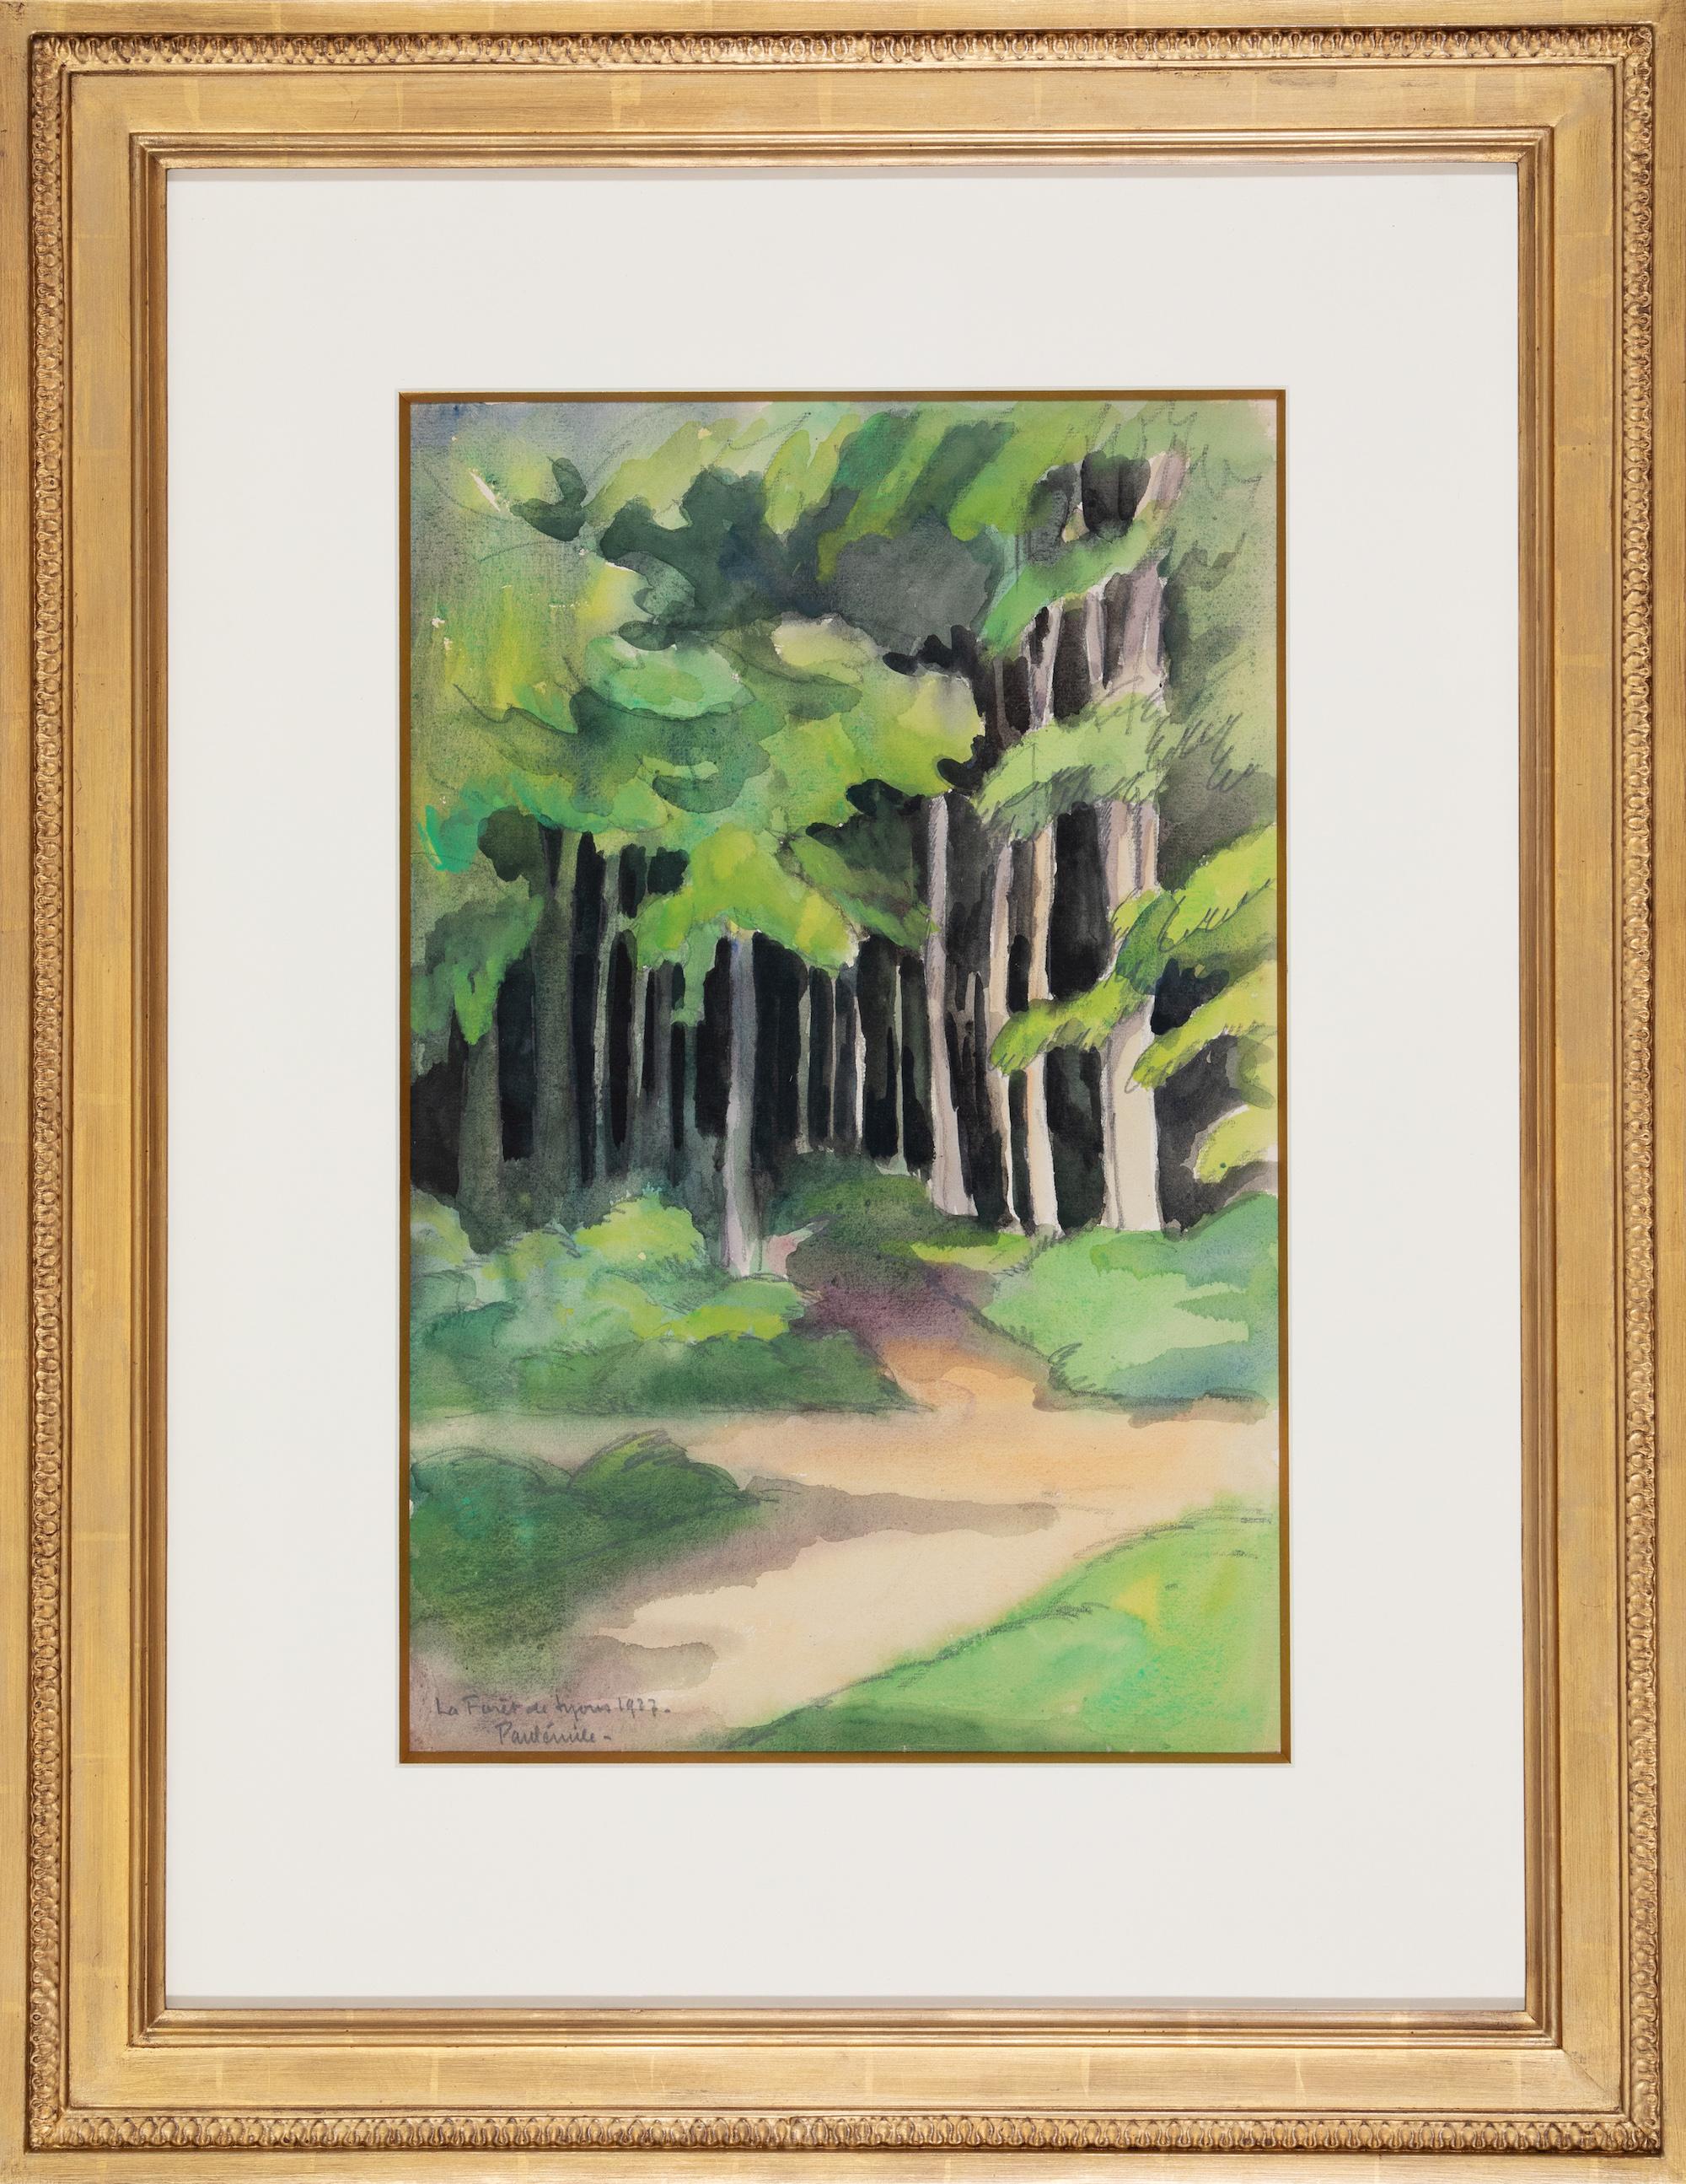 La Forêt de Lyons by Paulémile Pissarro - Watercolour landscape - Art by Paul Emile Pissarro